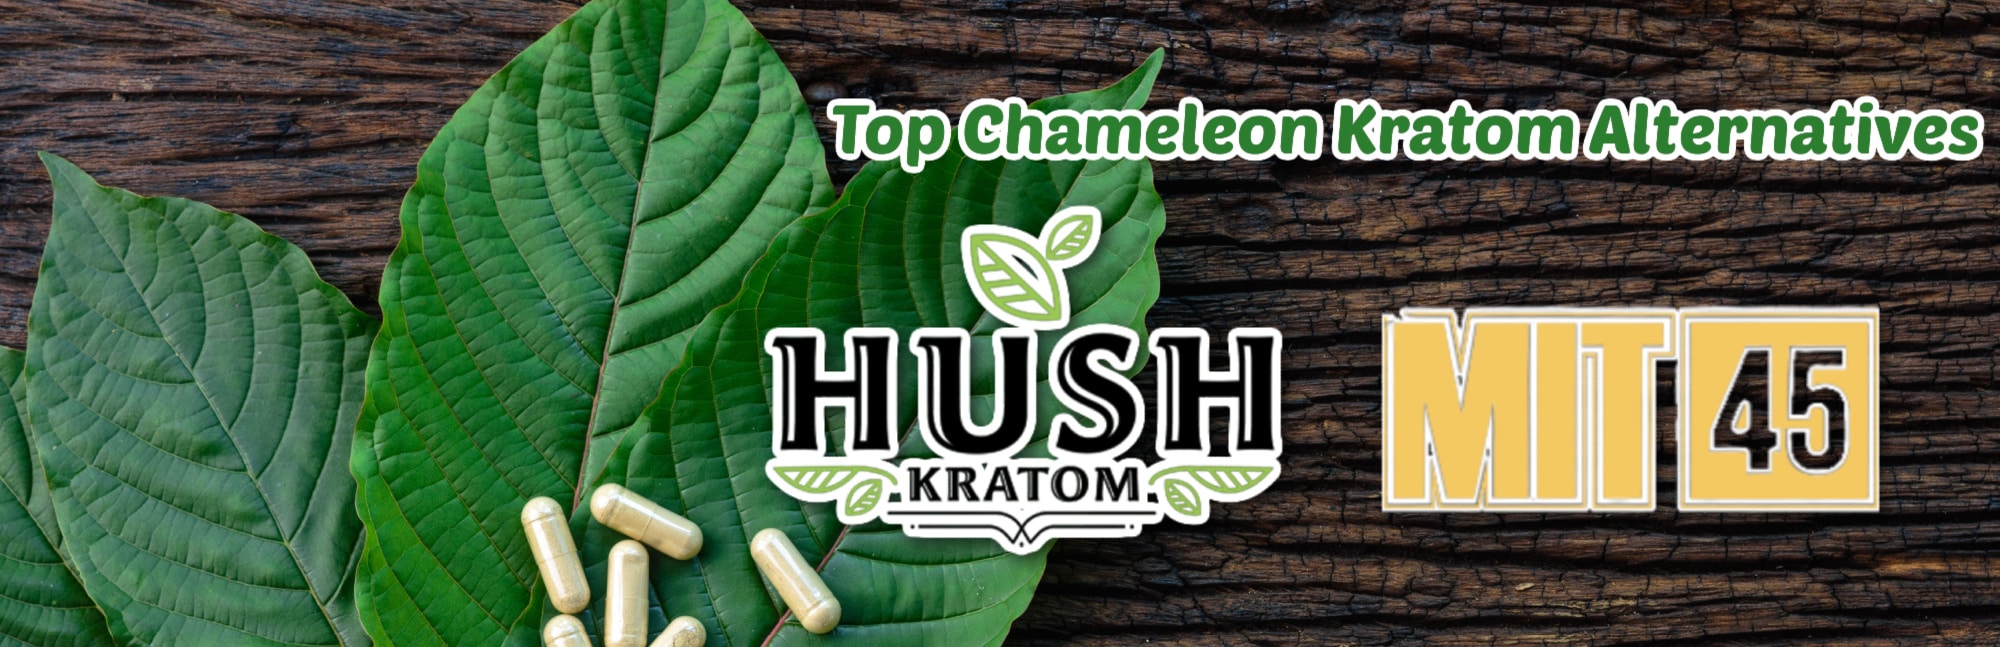 image of chameleon kratom alternatives